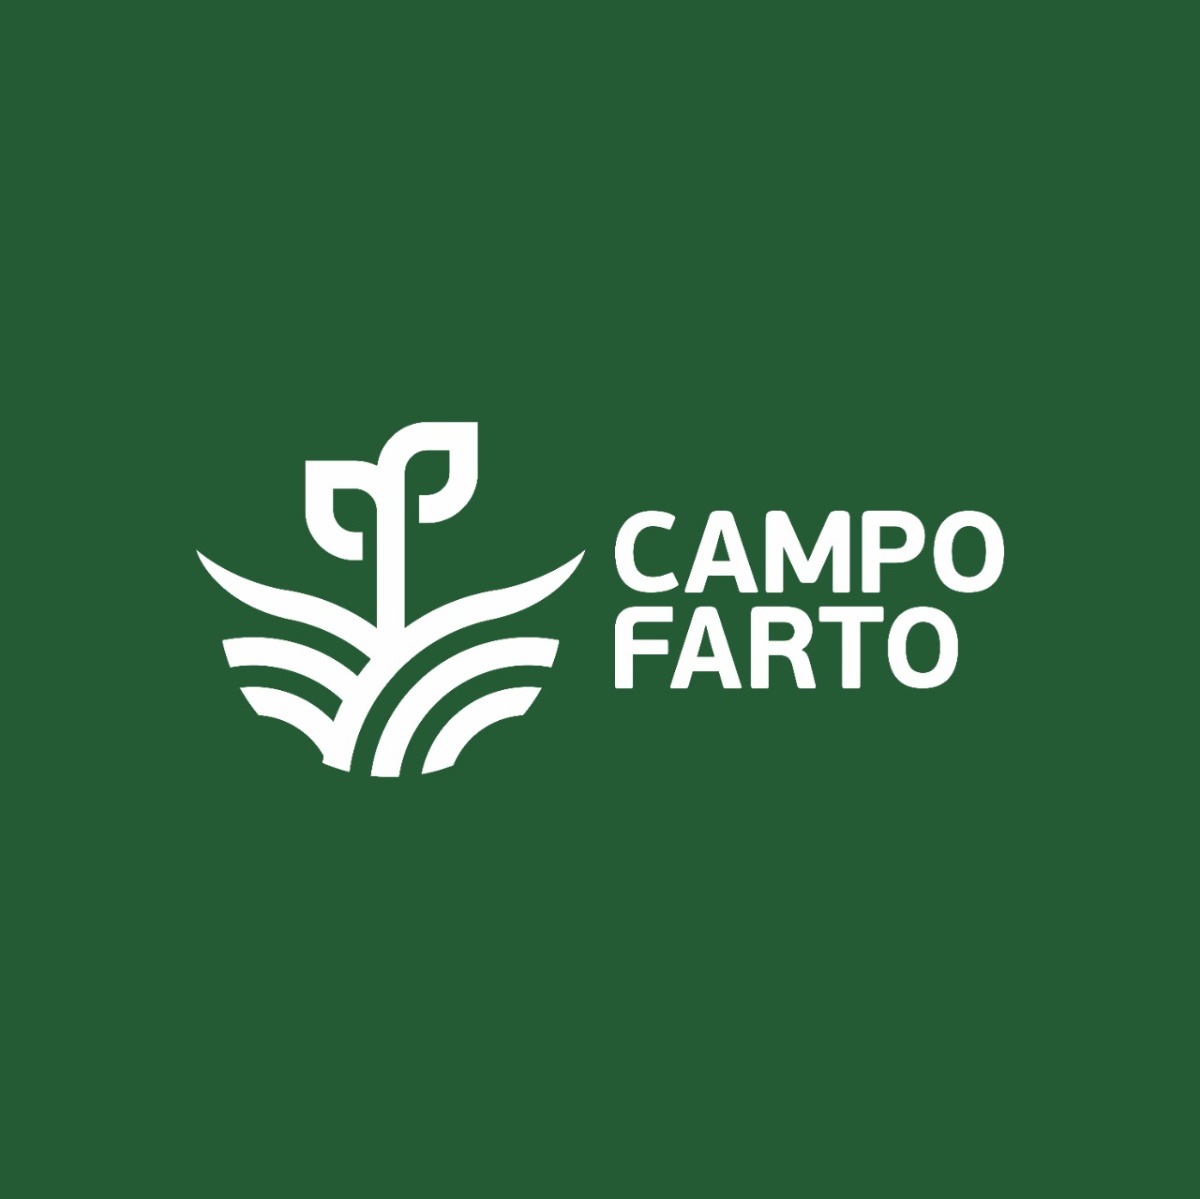 CAMPO FARTO